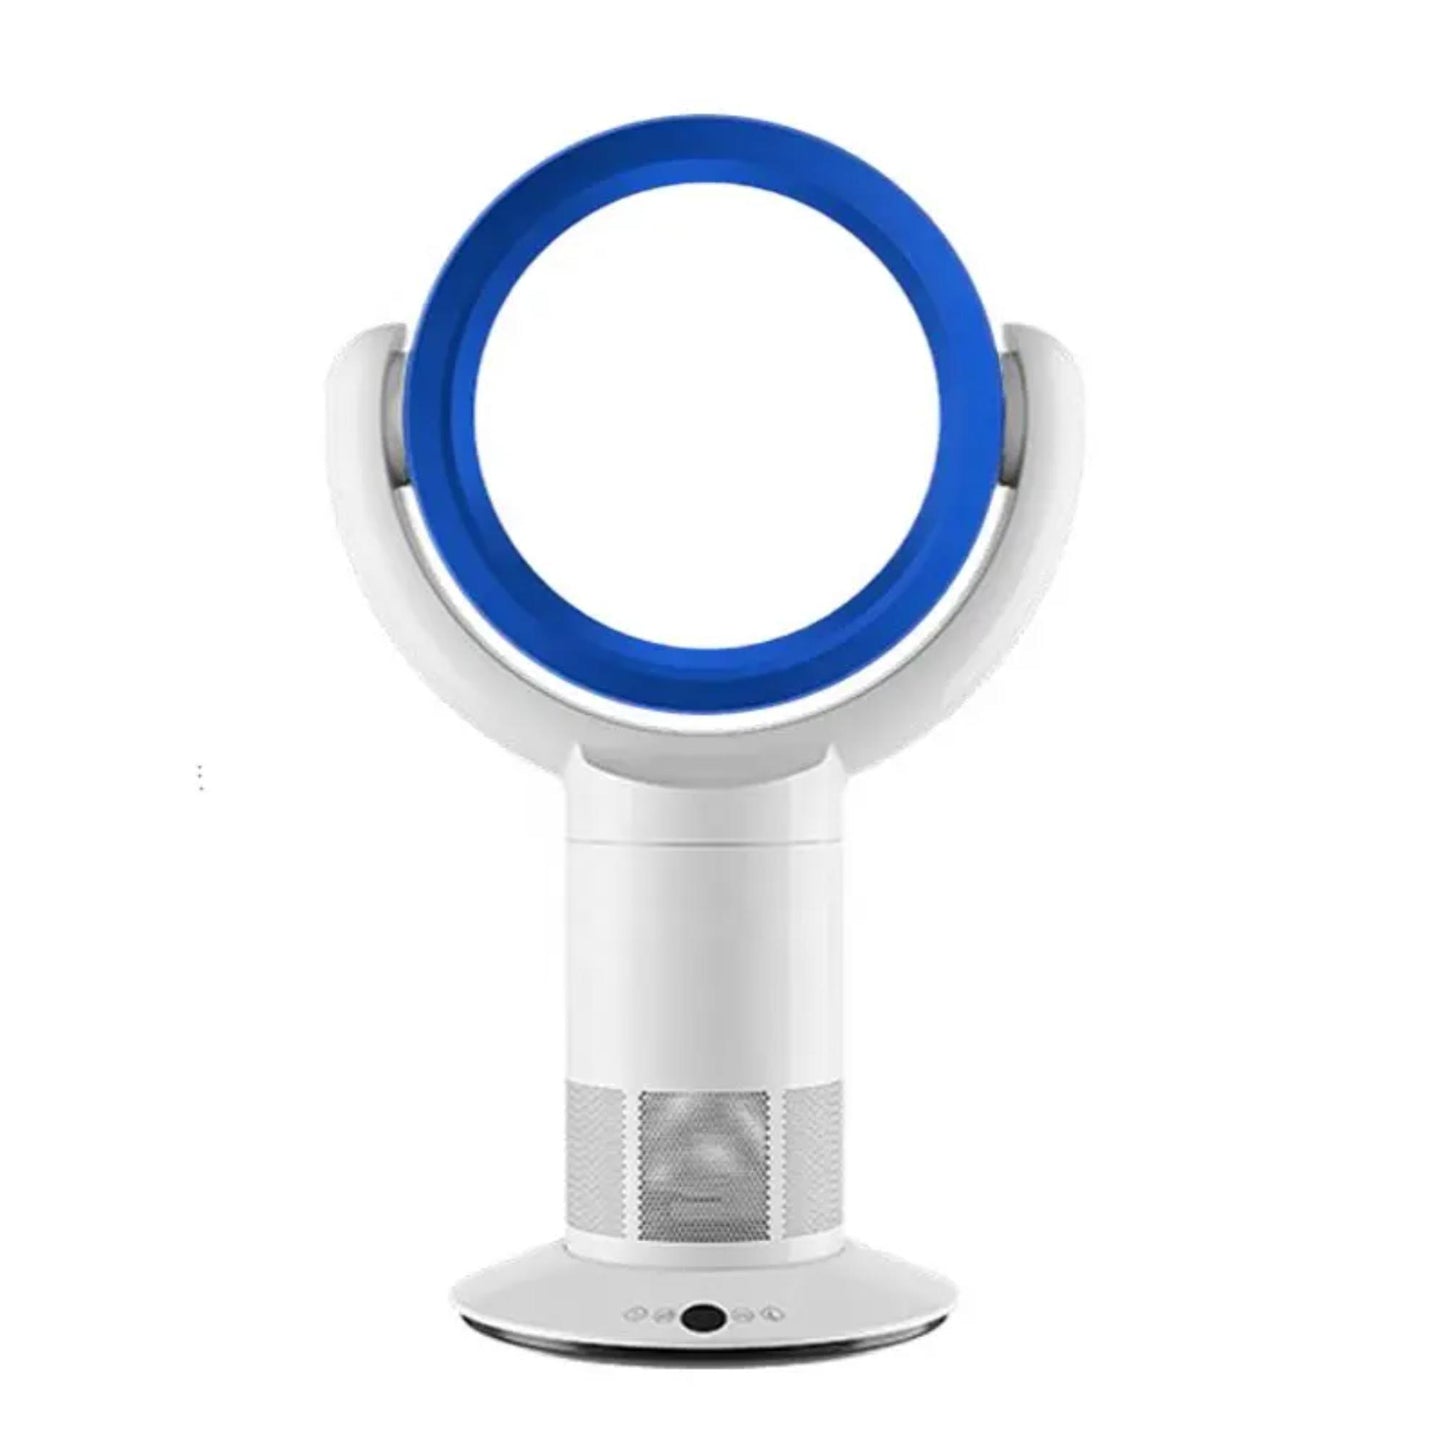 Ferngesteuerter Turmventilator mit Timerfunktion für mehr Komfort. | Blue Chilli Electronics.